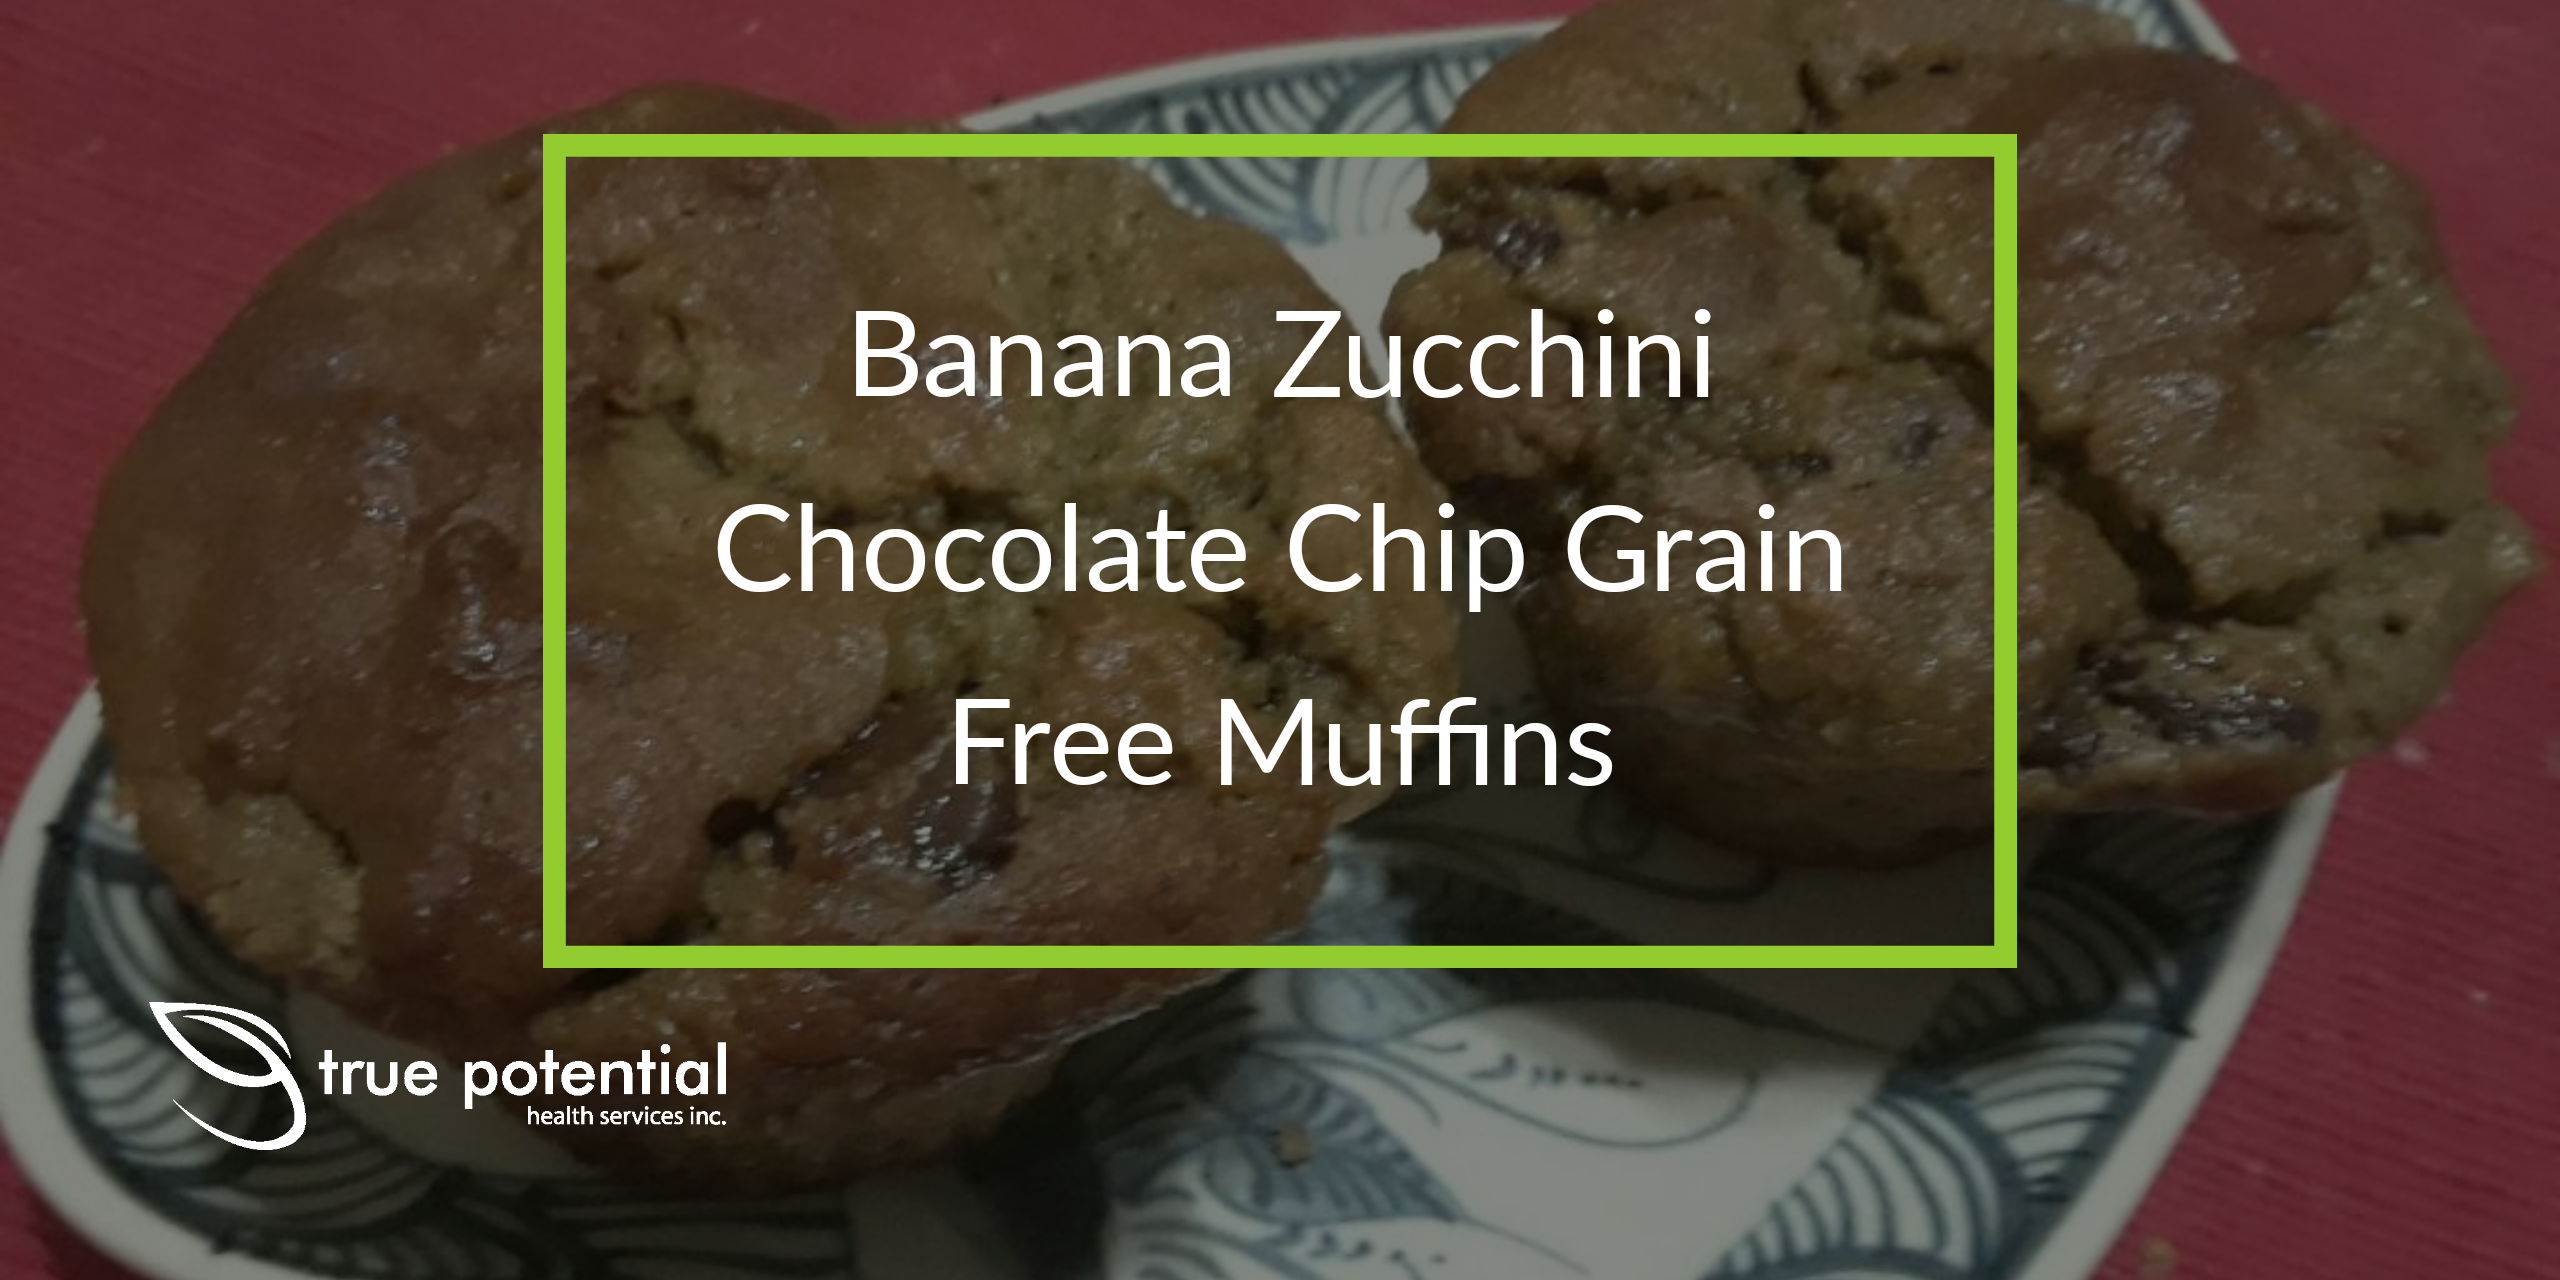 Banana Zucchini Chocolate Chip Grain Free Muffins